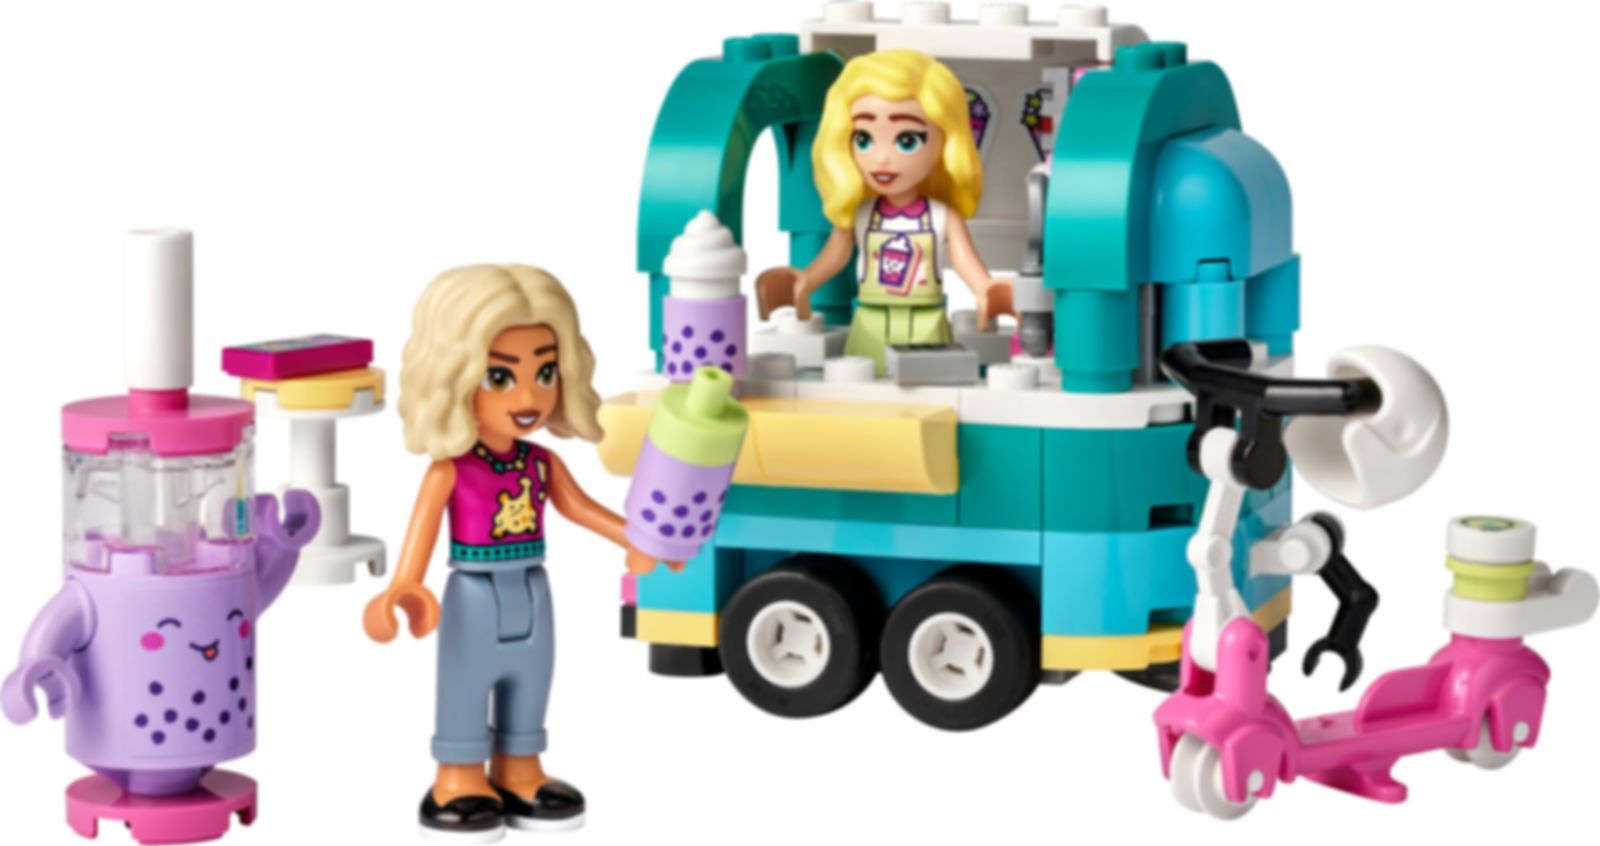 LEGO® Friends Mobile Bubble Tea Shop gameplay